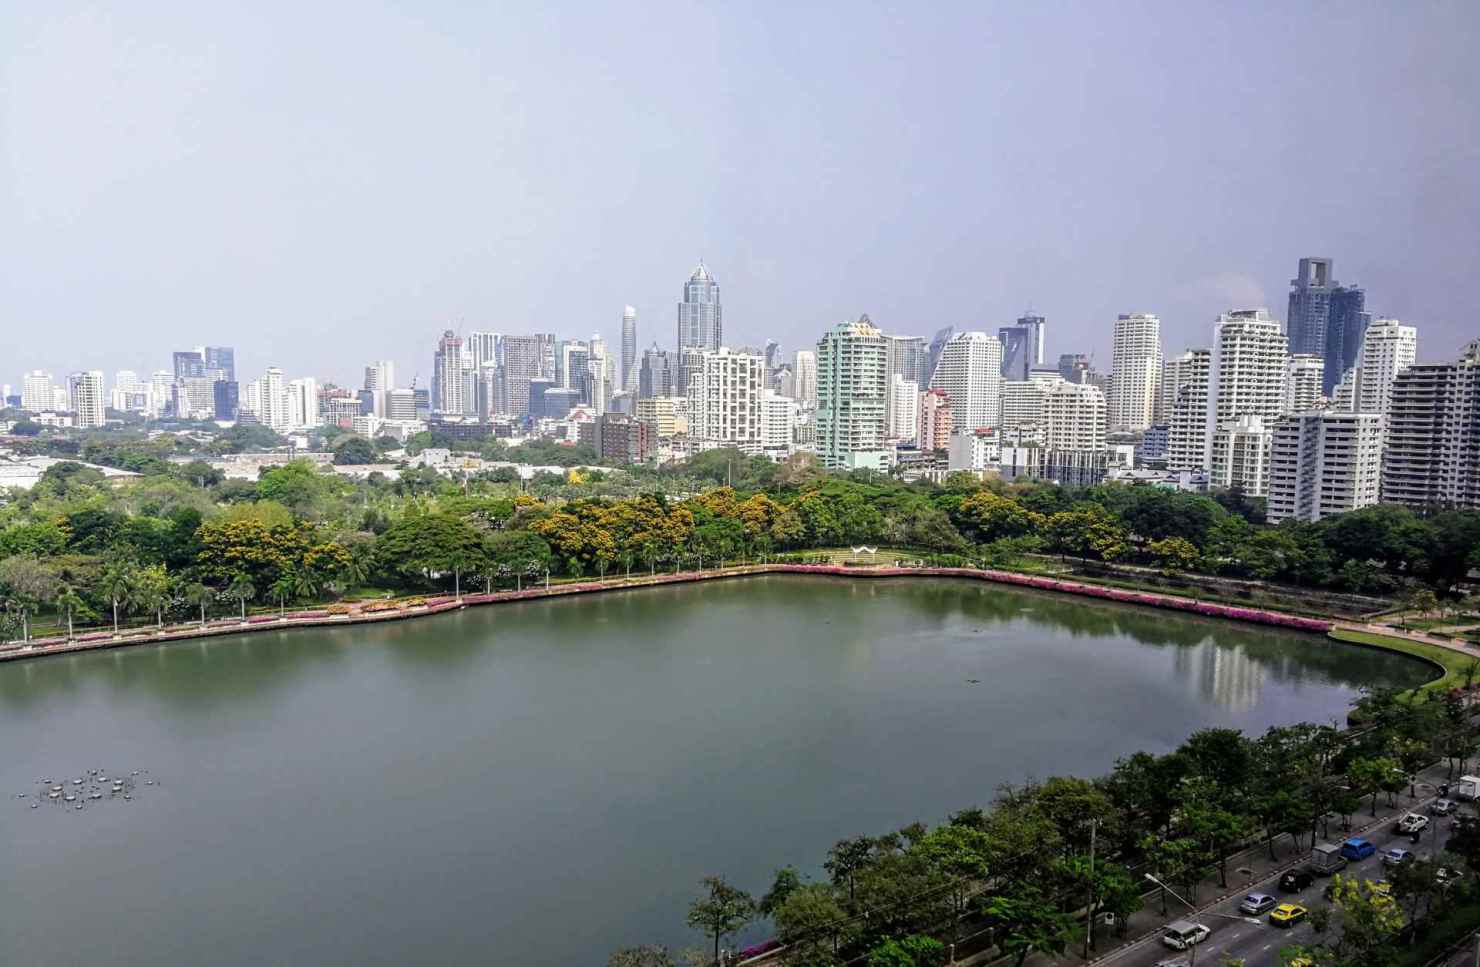 Các thành phố lớn tại châu Á - Thái Bình Dương như Bangkok (Thái Lan) càng ngày thu hút nhiều dự án xây dựng khách sạn